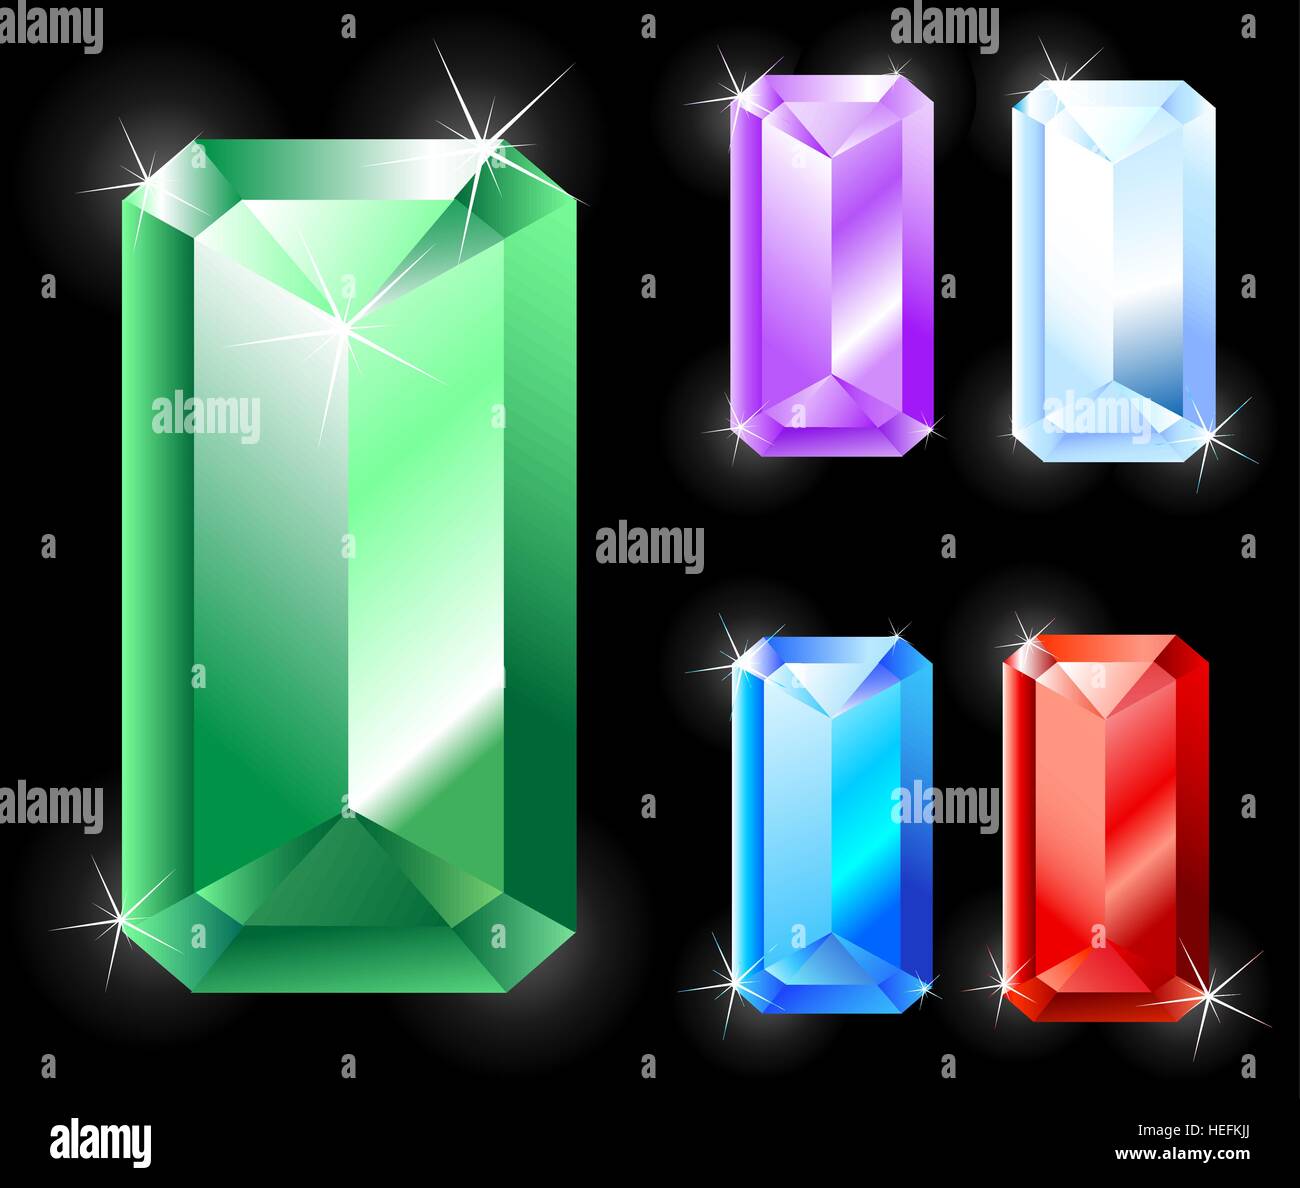 Le gemme di forma rettangolare allungata, taglio: Emerald, Rubino, Ametista, Zaffiro. Illustrazione Vettoriale